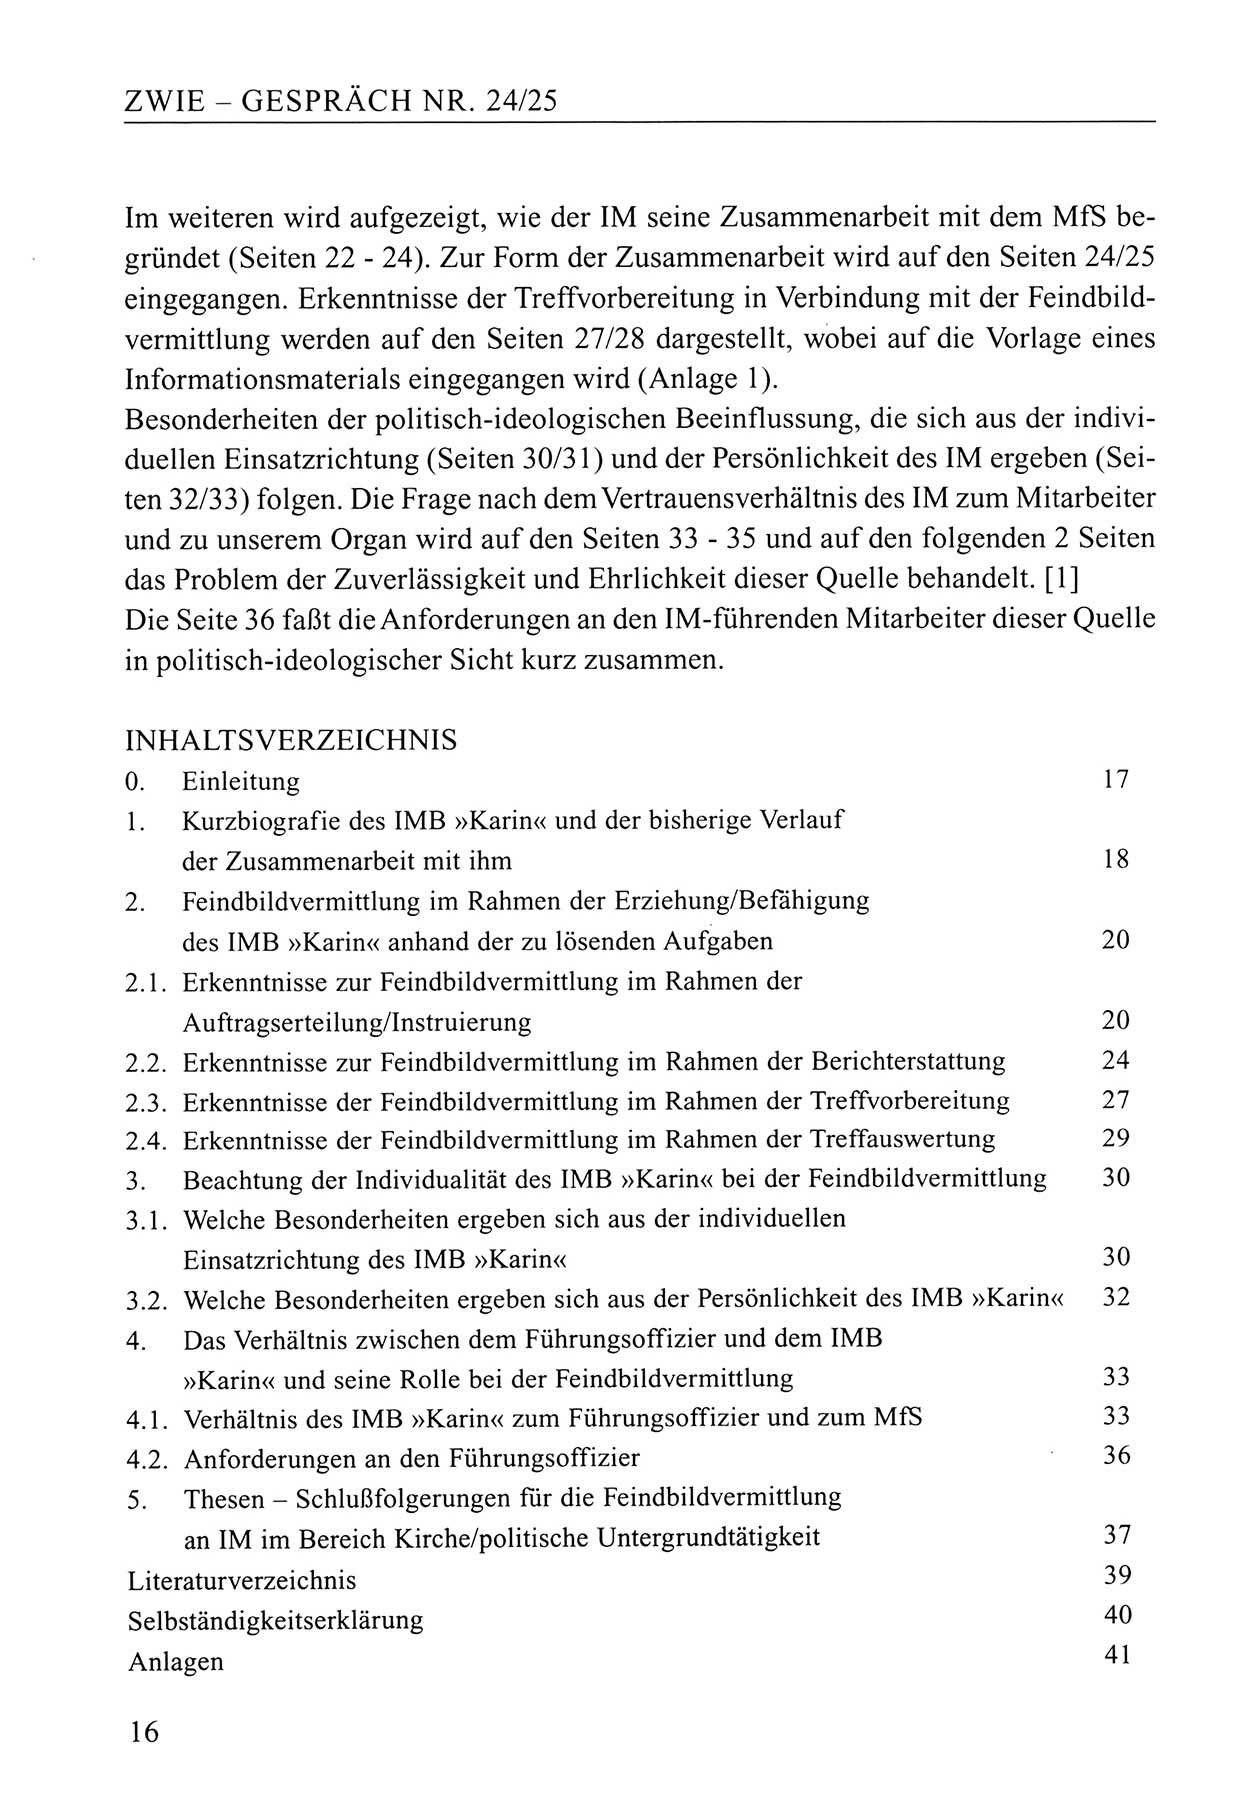 Zwie-Gespräch, Beiträge zum Umgang mit der Staatssicherheits-Vergangenheit [Deutsche Demokratische Republik (DDR)], Ausgabe Nr. 24/25, Berlin 1994, Seite 16 (Zwie-Gespr. Ausg. 24/25 1994, S. 16)